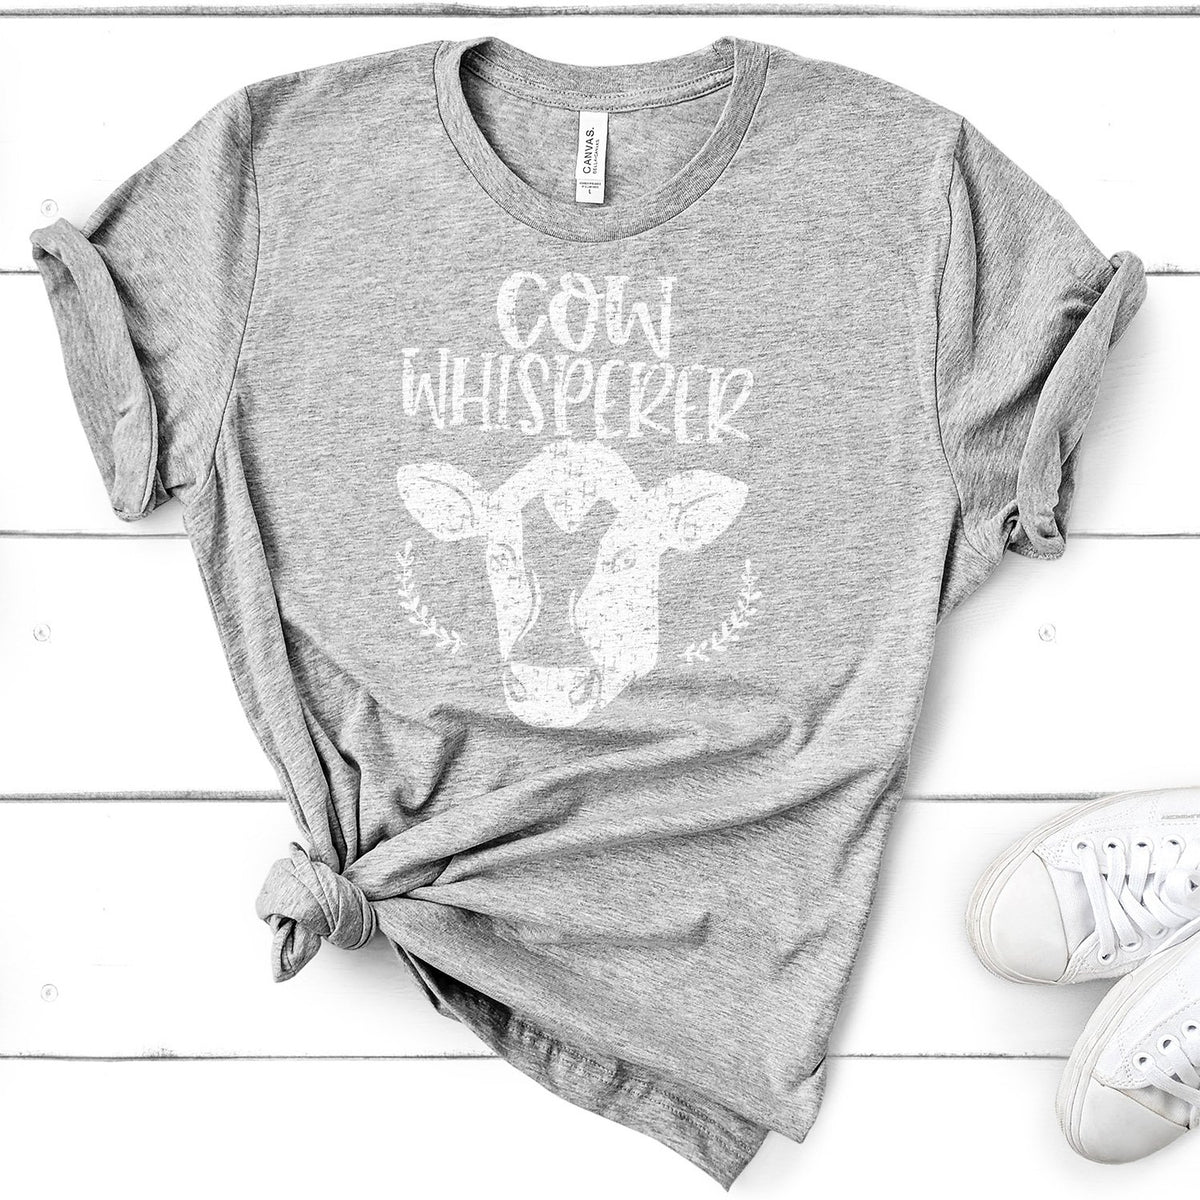 Cow Whisperer - Short Sleeve Tee Shirt